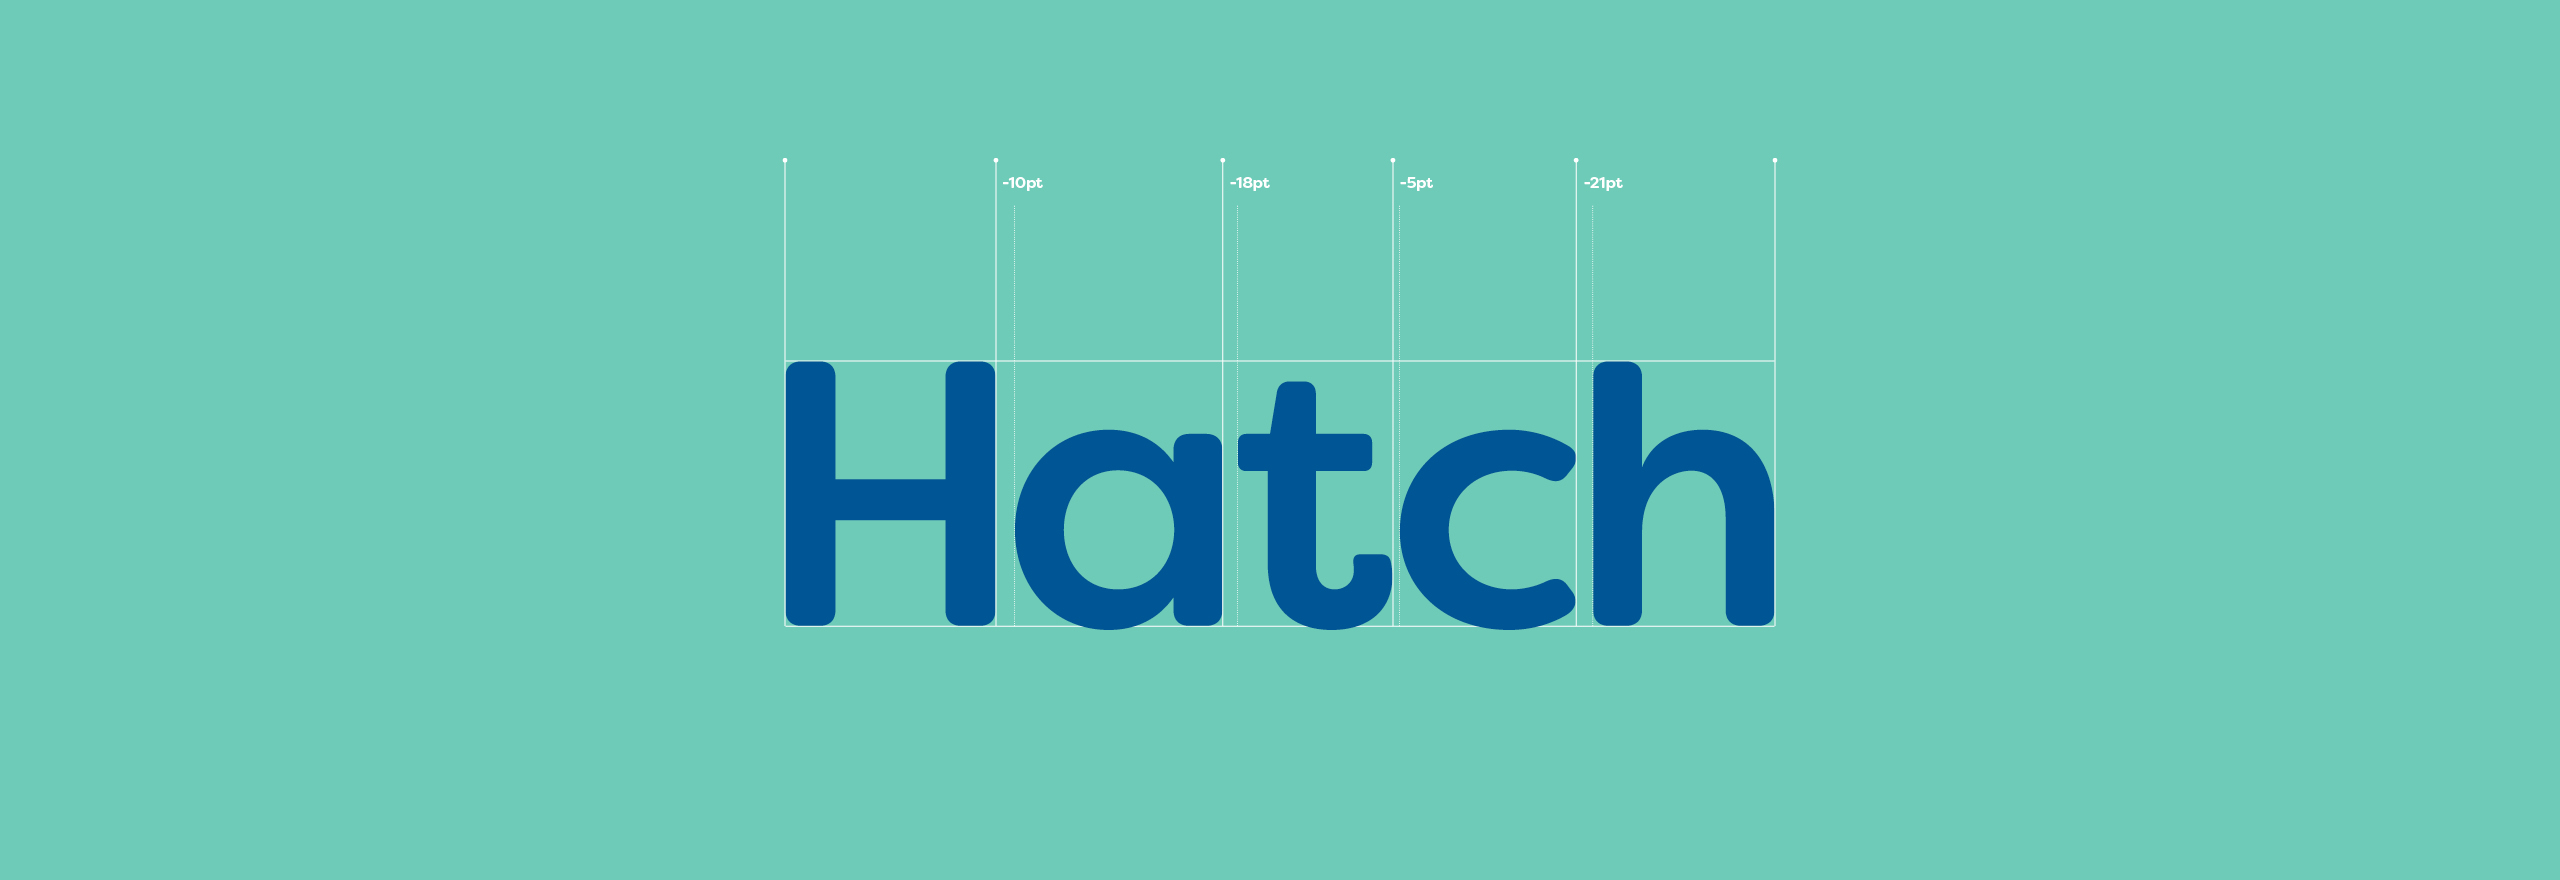 Wrightio_Hatch Print_Logotype